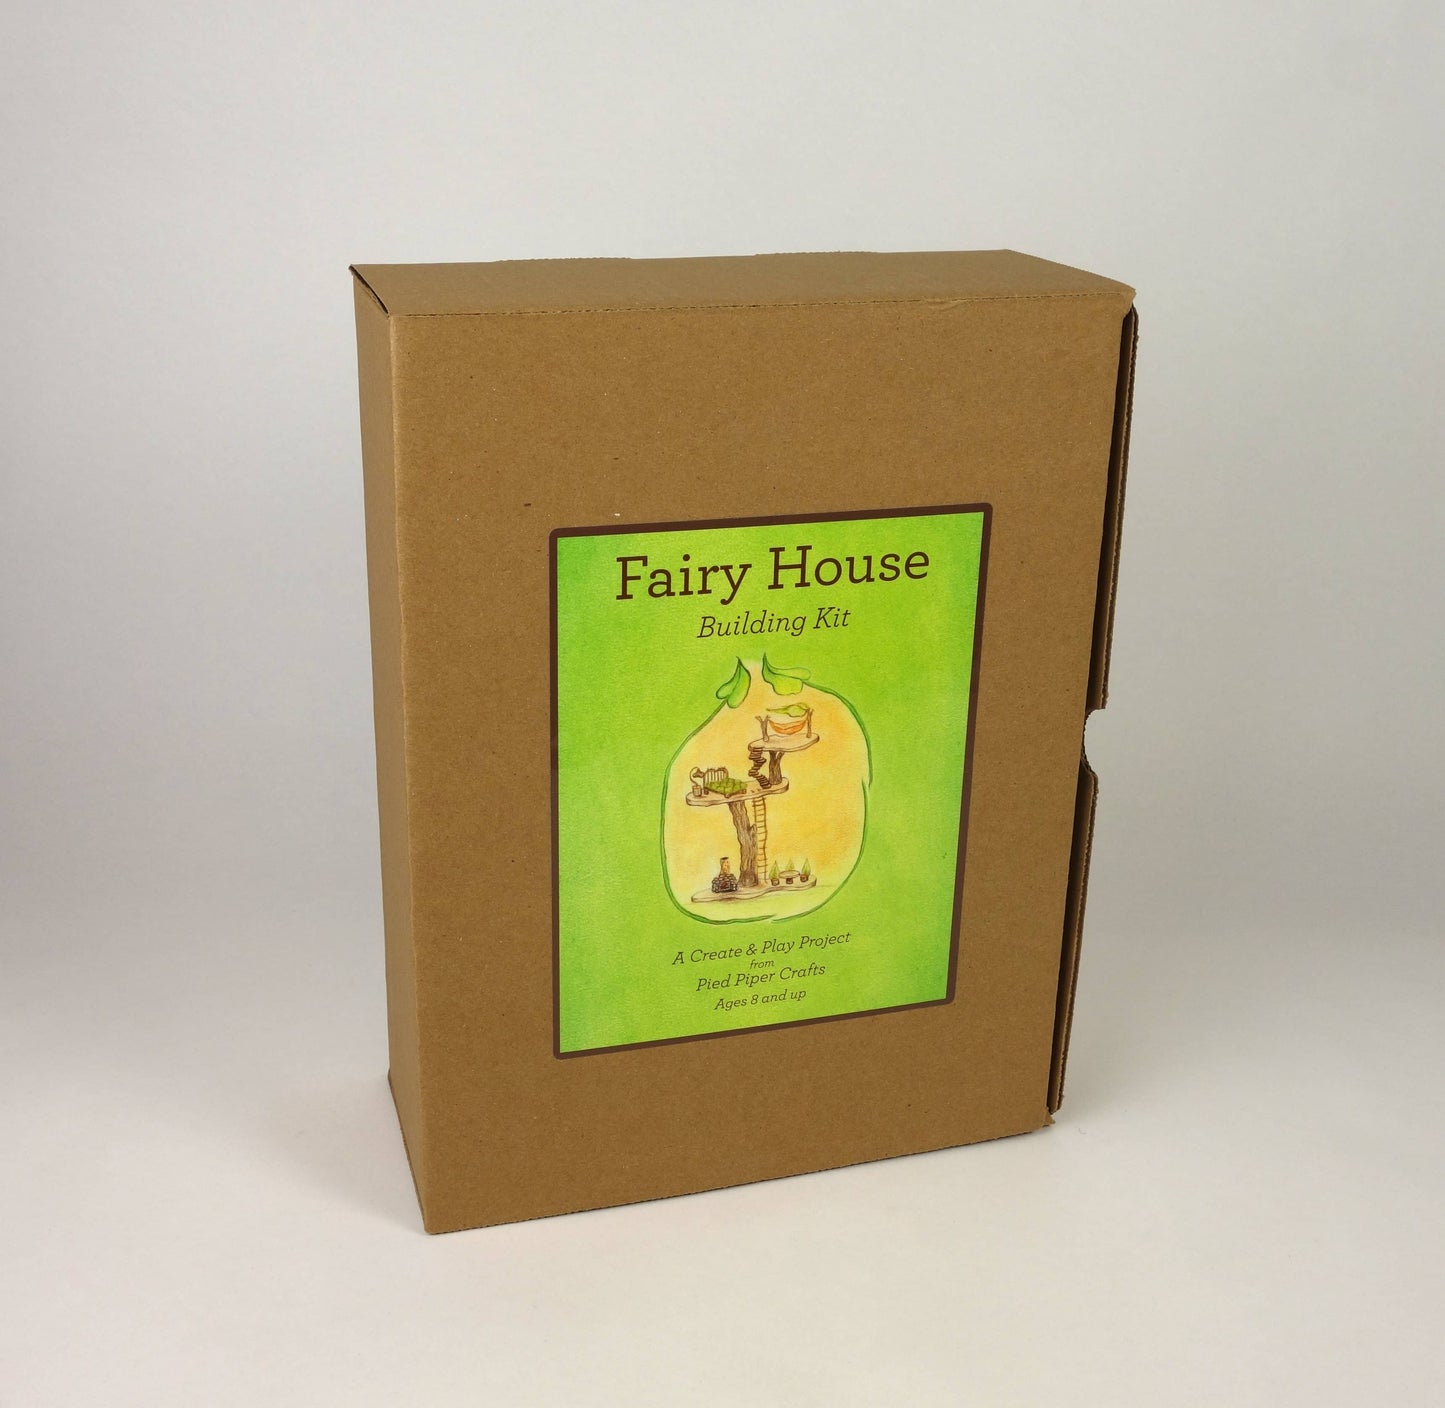 Fairy House building kit